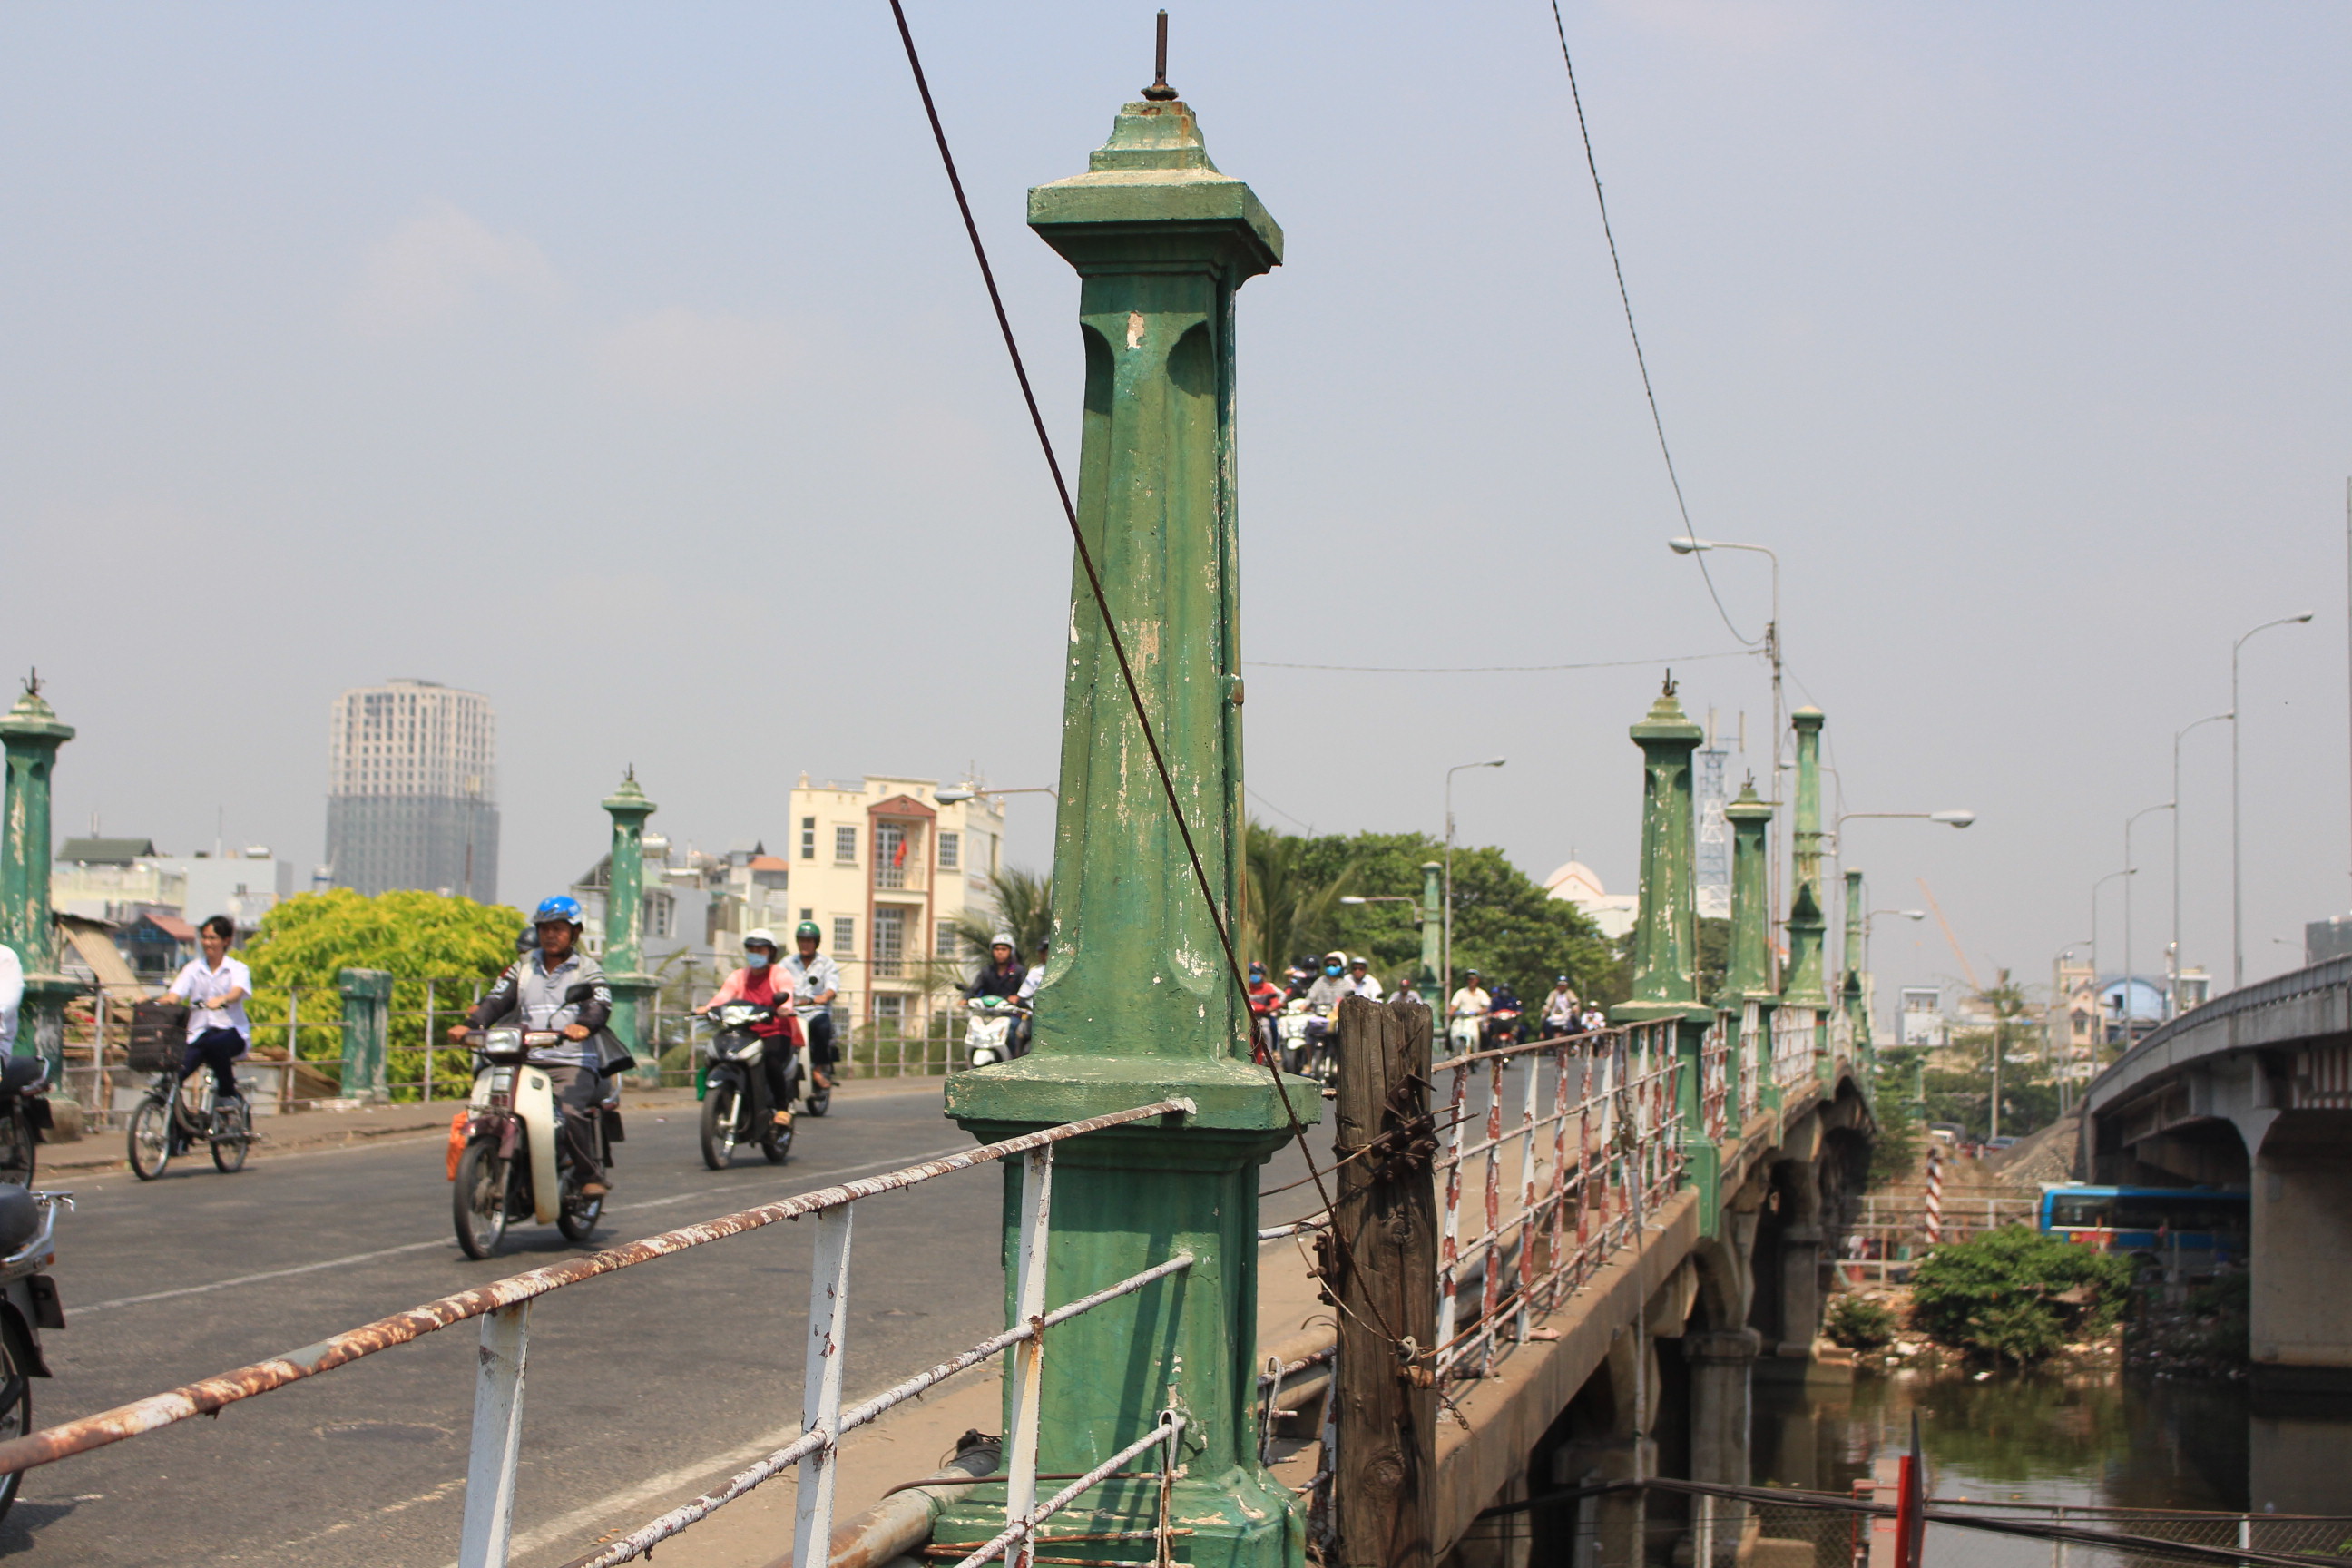 Hàng cột xanh rêu là đặc điểm nổi bật trong kiến trúc của cầu - Ảnh: Vũ Phượng